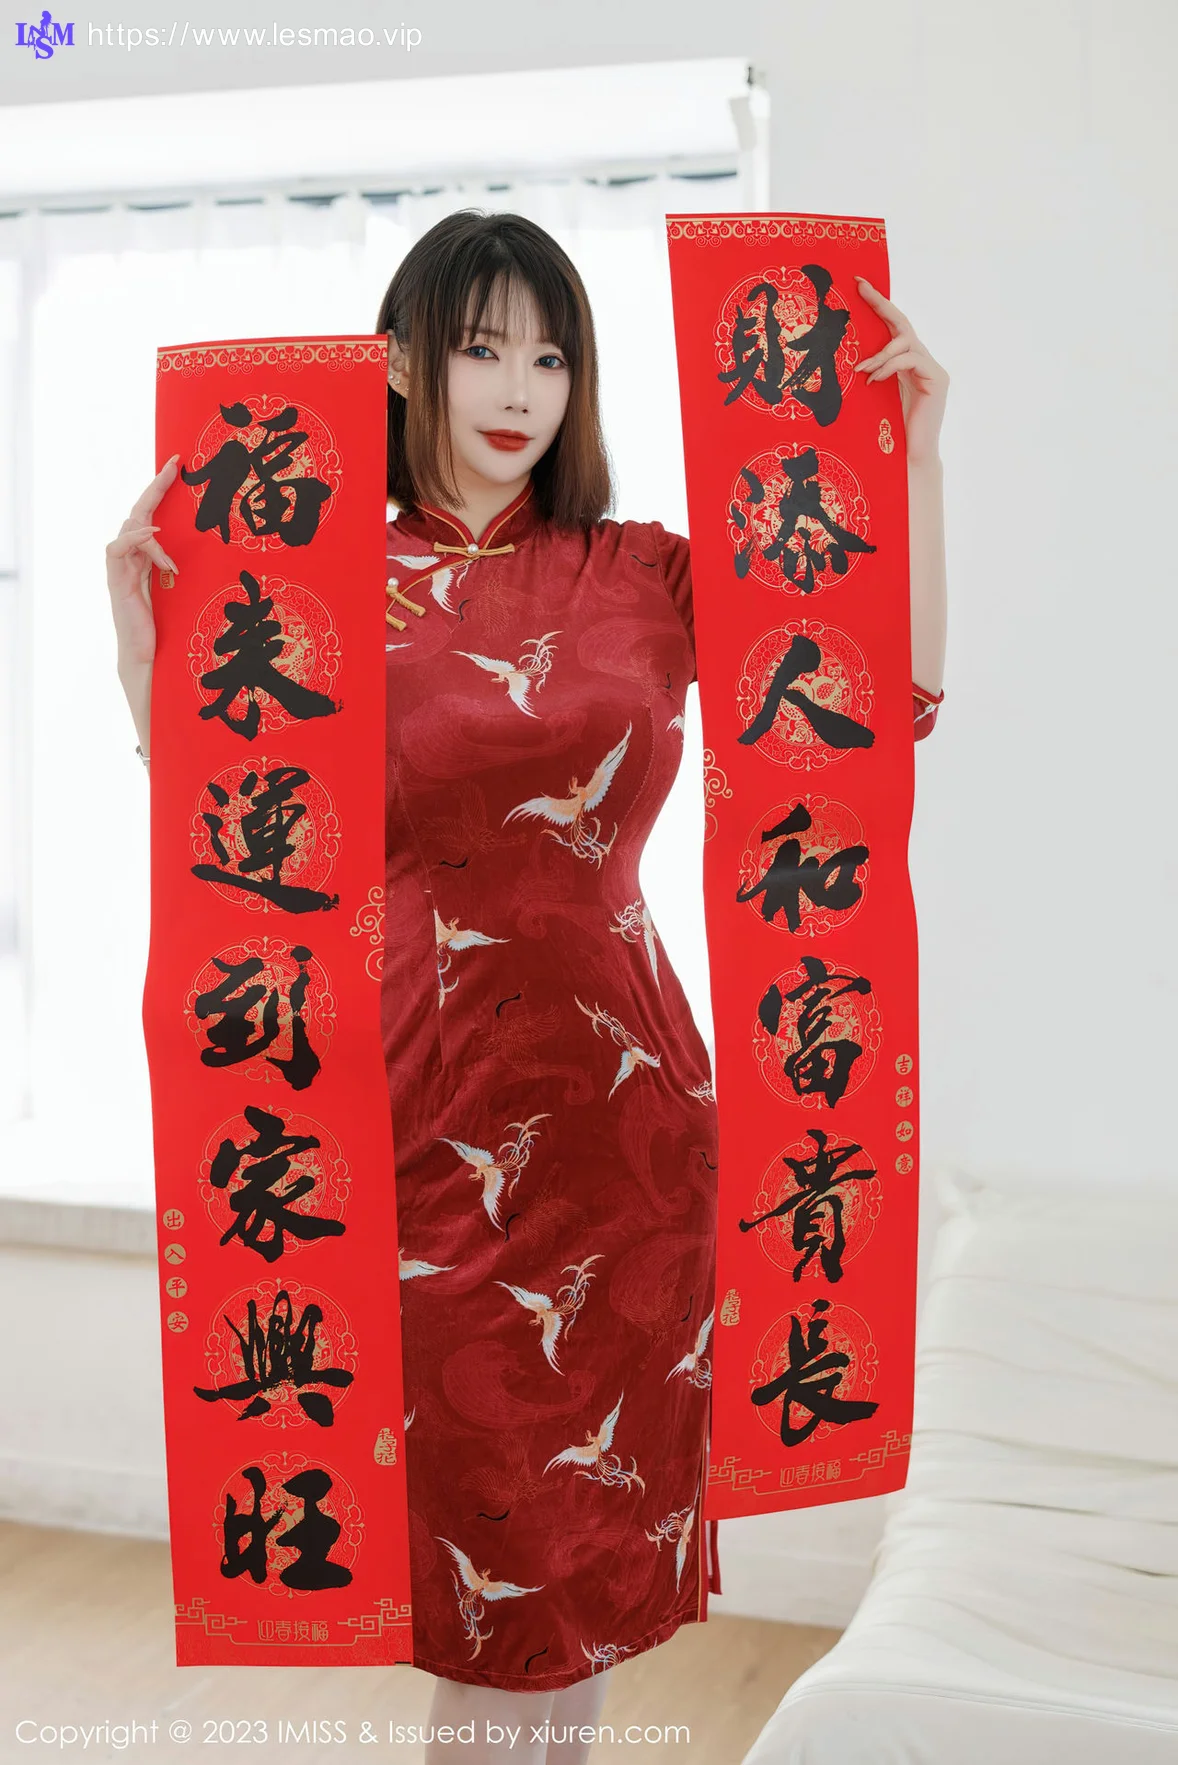 IMiss 爱蜜社 Vol.716 Evon陈赞之 红色旗袍最新性感写真 - 4